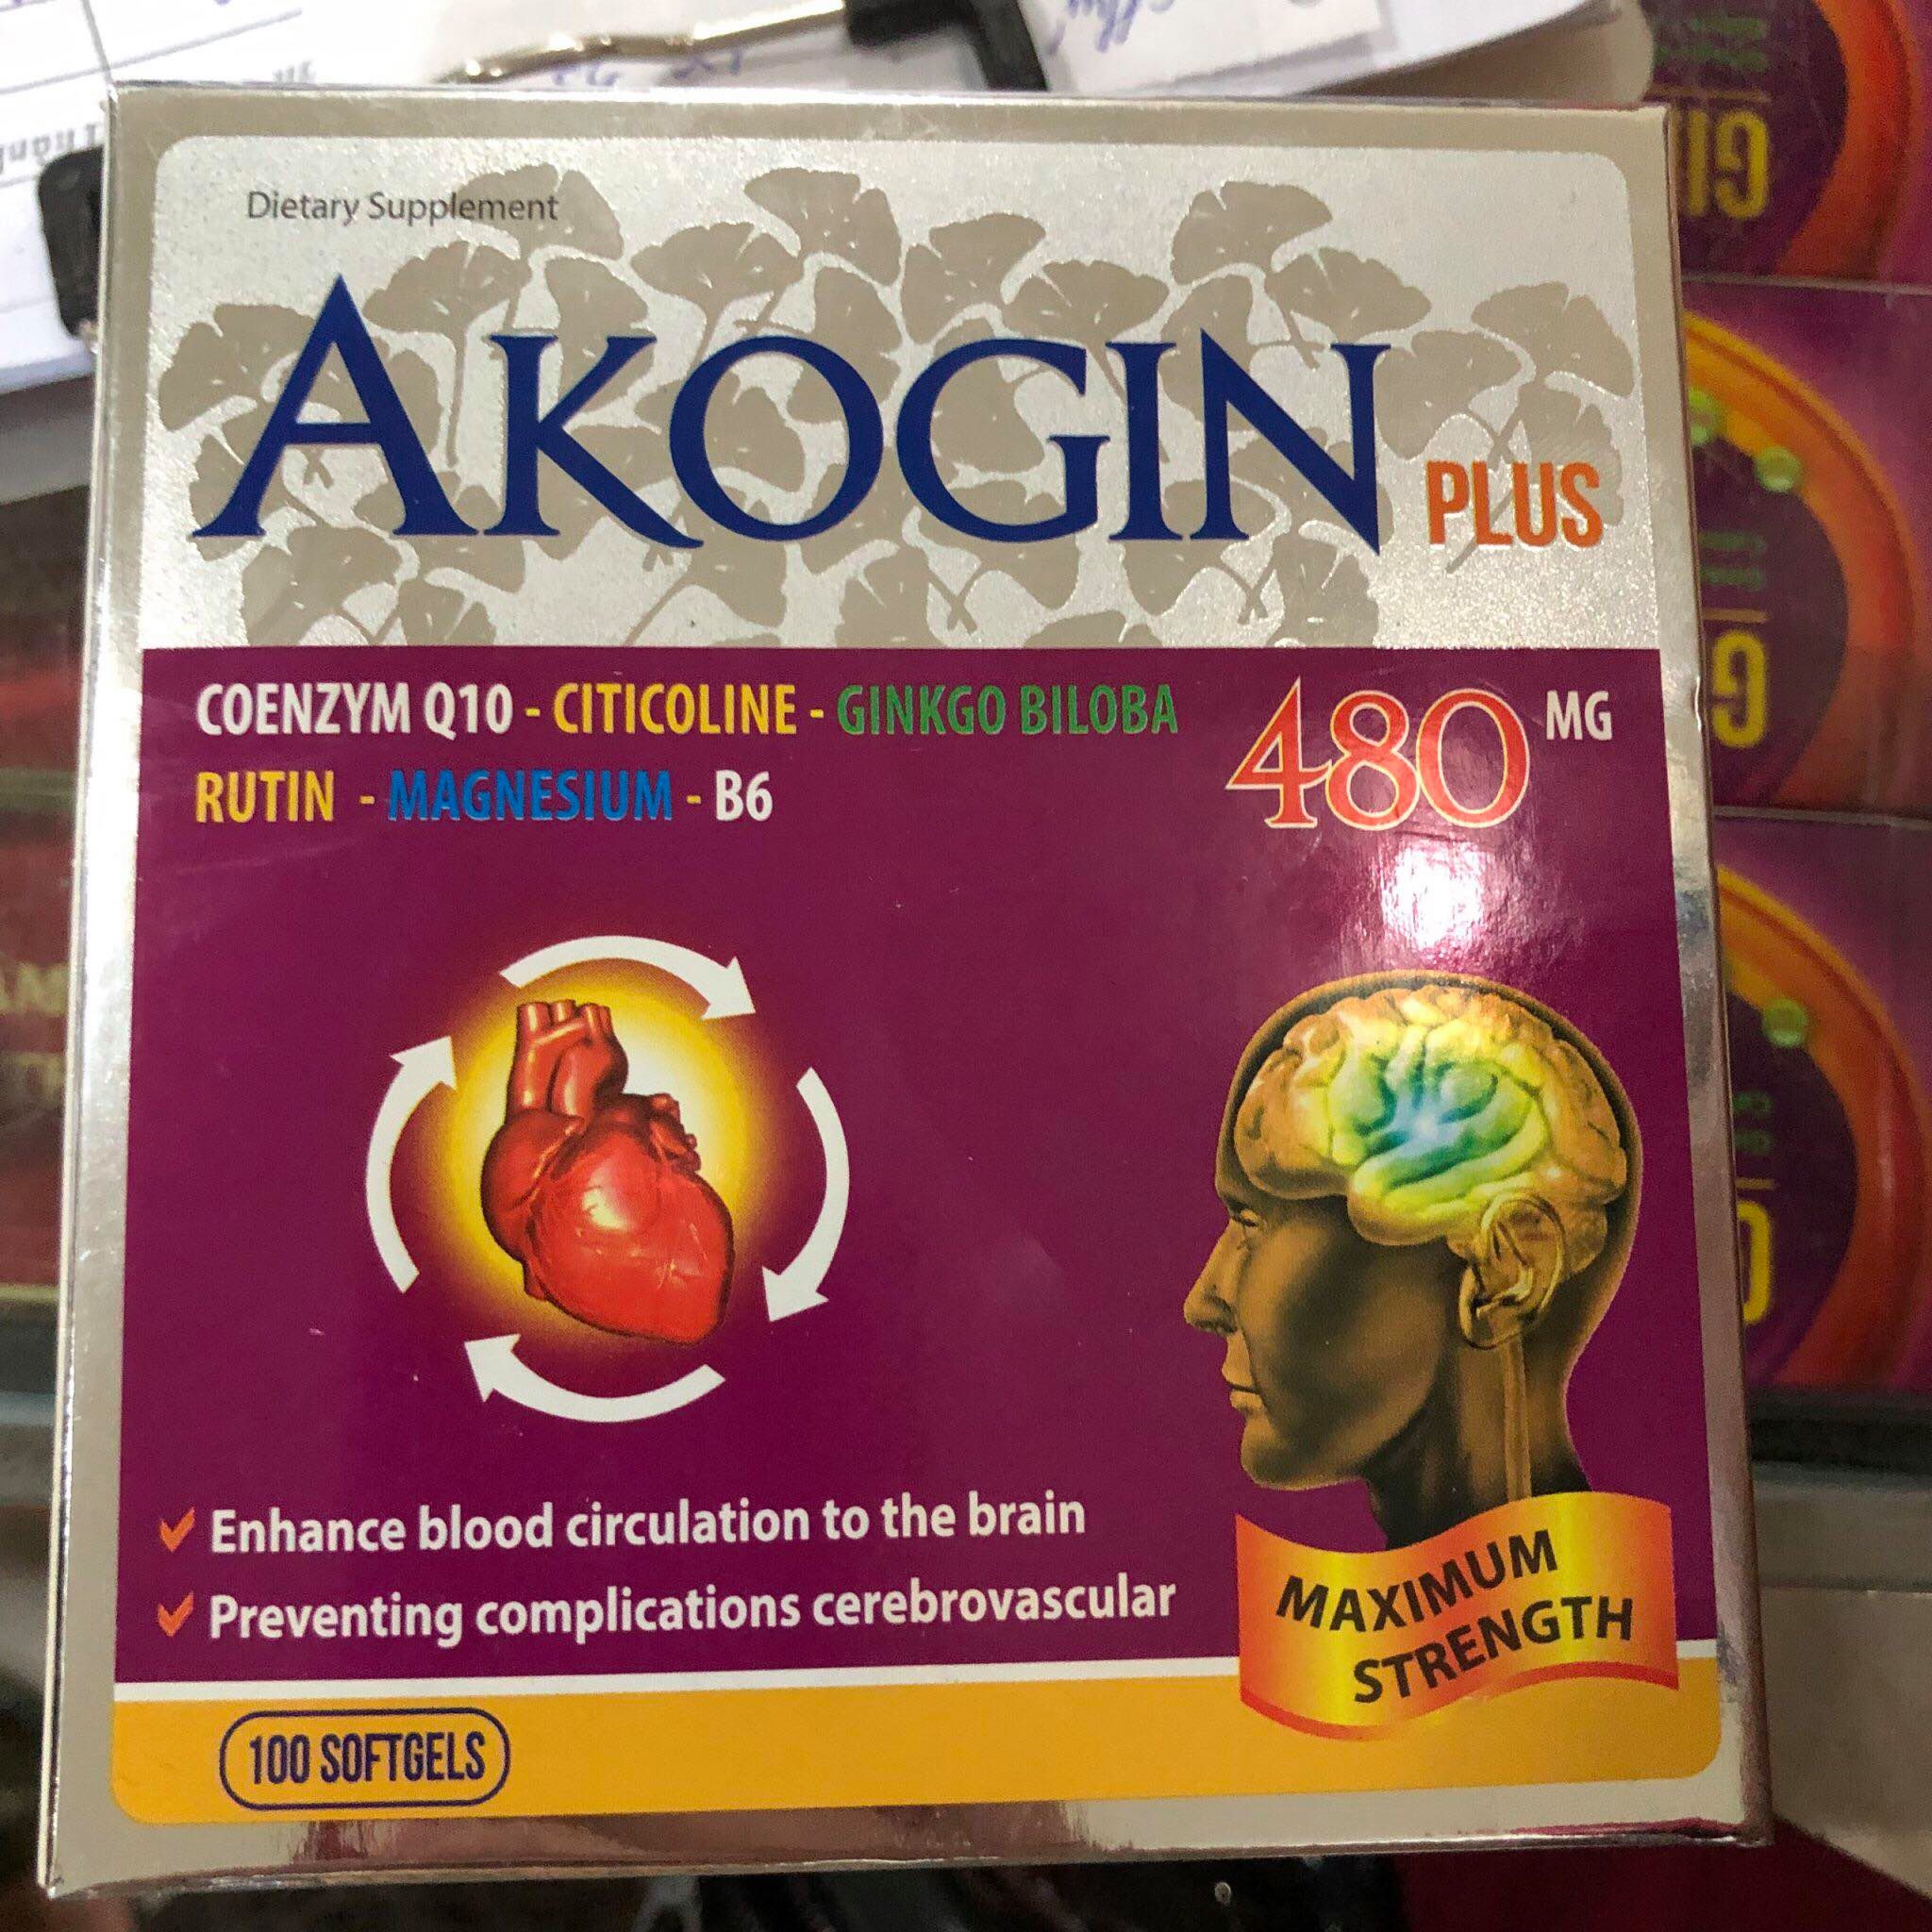 Akogin Plus